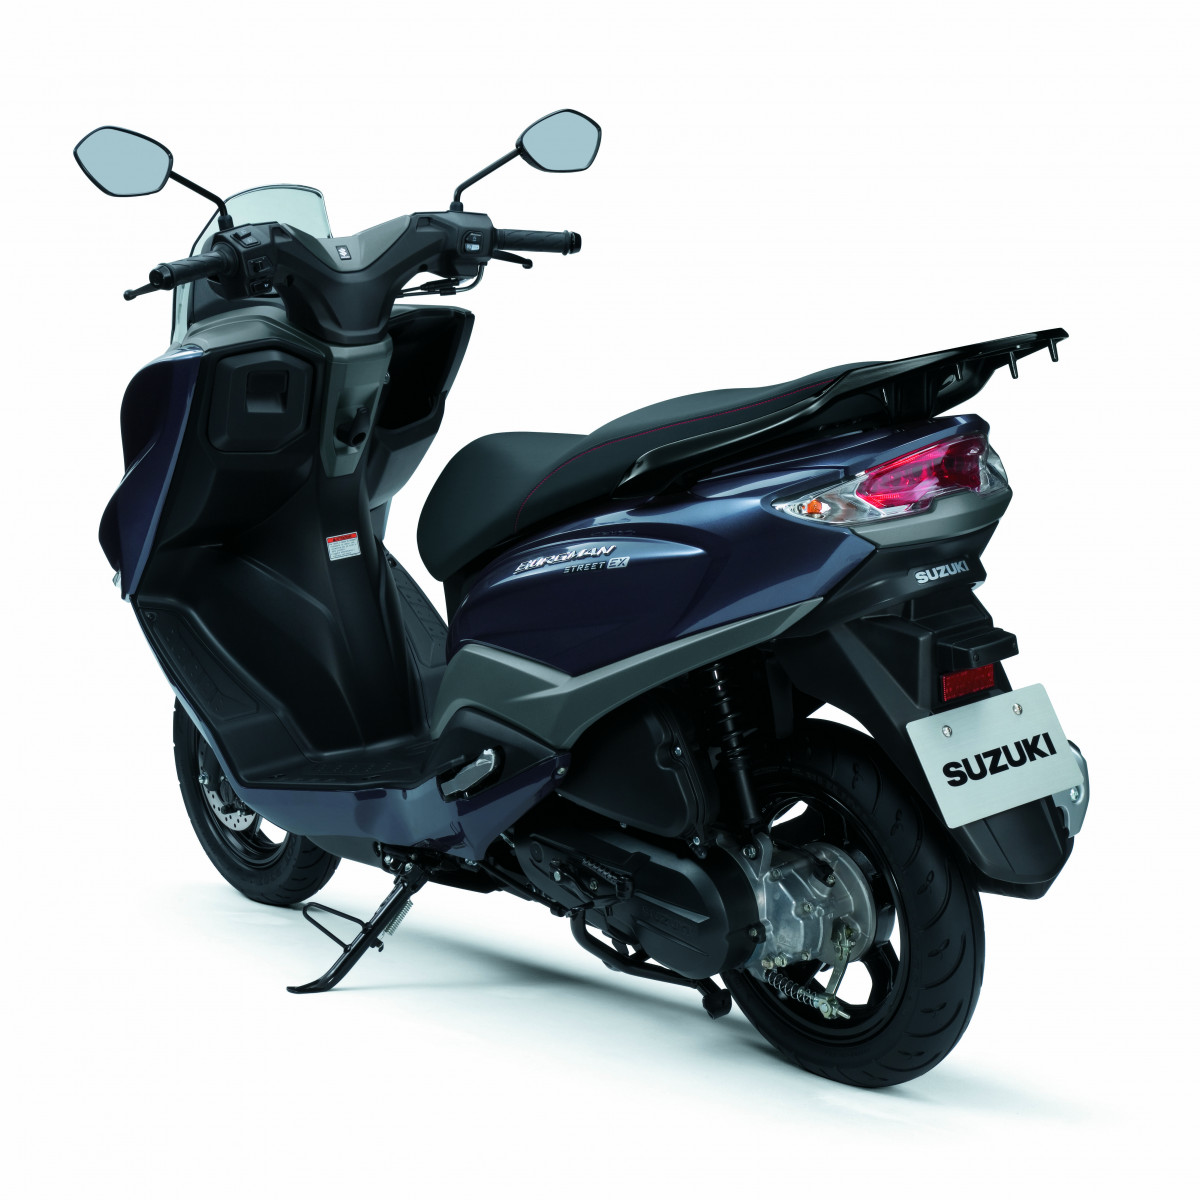 Suzuki lanza el innovador Burgman Street 125EX moto (12)